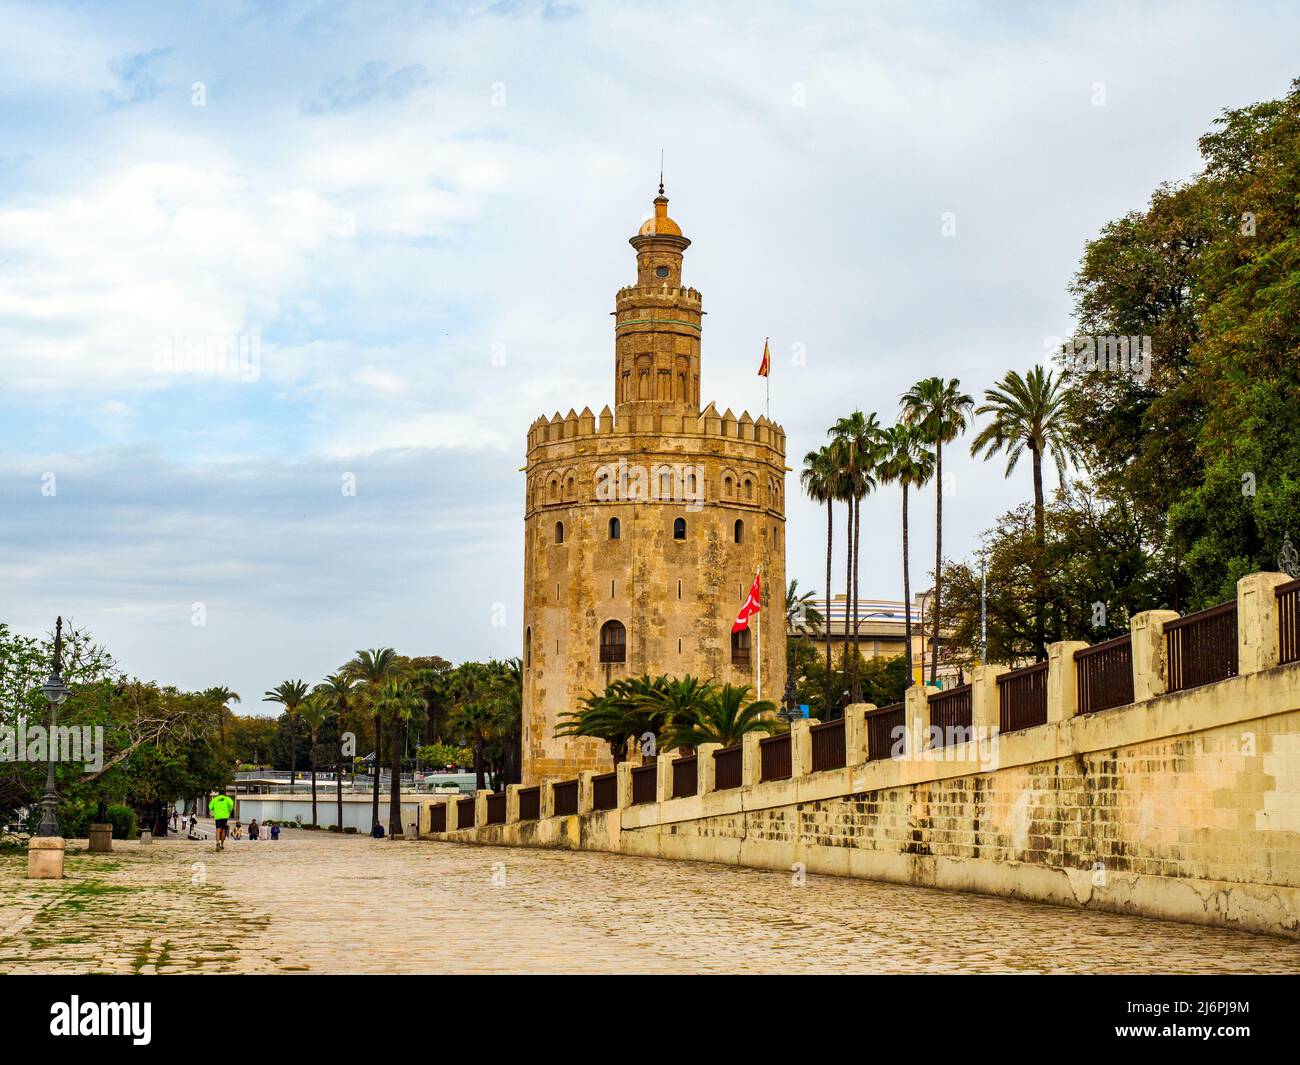 Der 13.. Jahrhundert dodekagonale militärische Wachturm Torre del Oro (Turm des Goldes) - Sevilla, Spanien Stockfoto